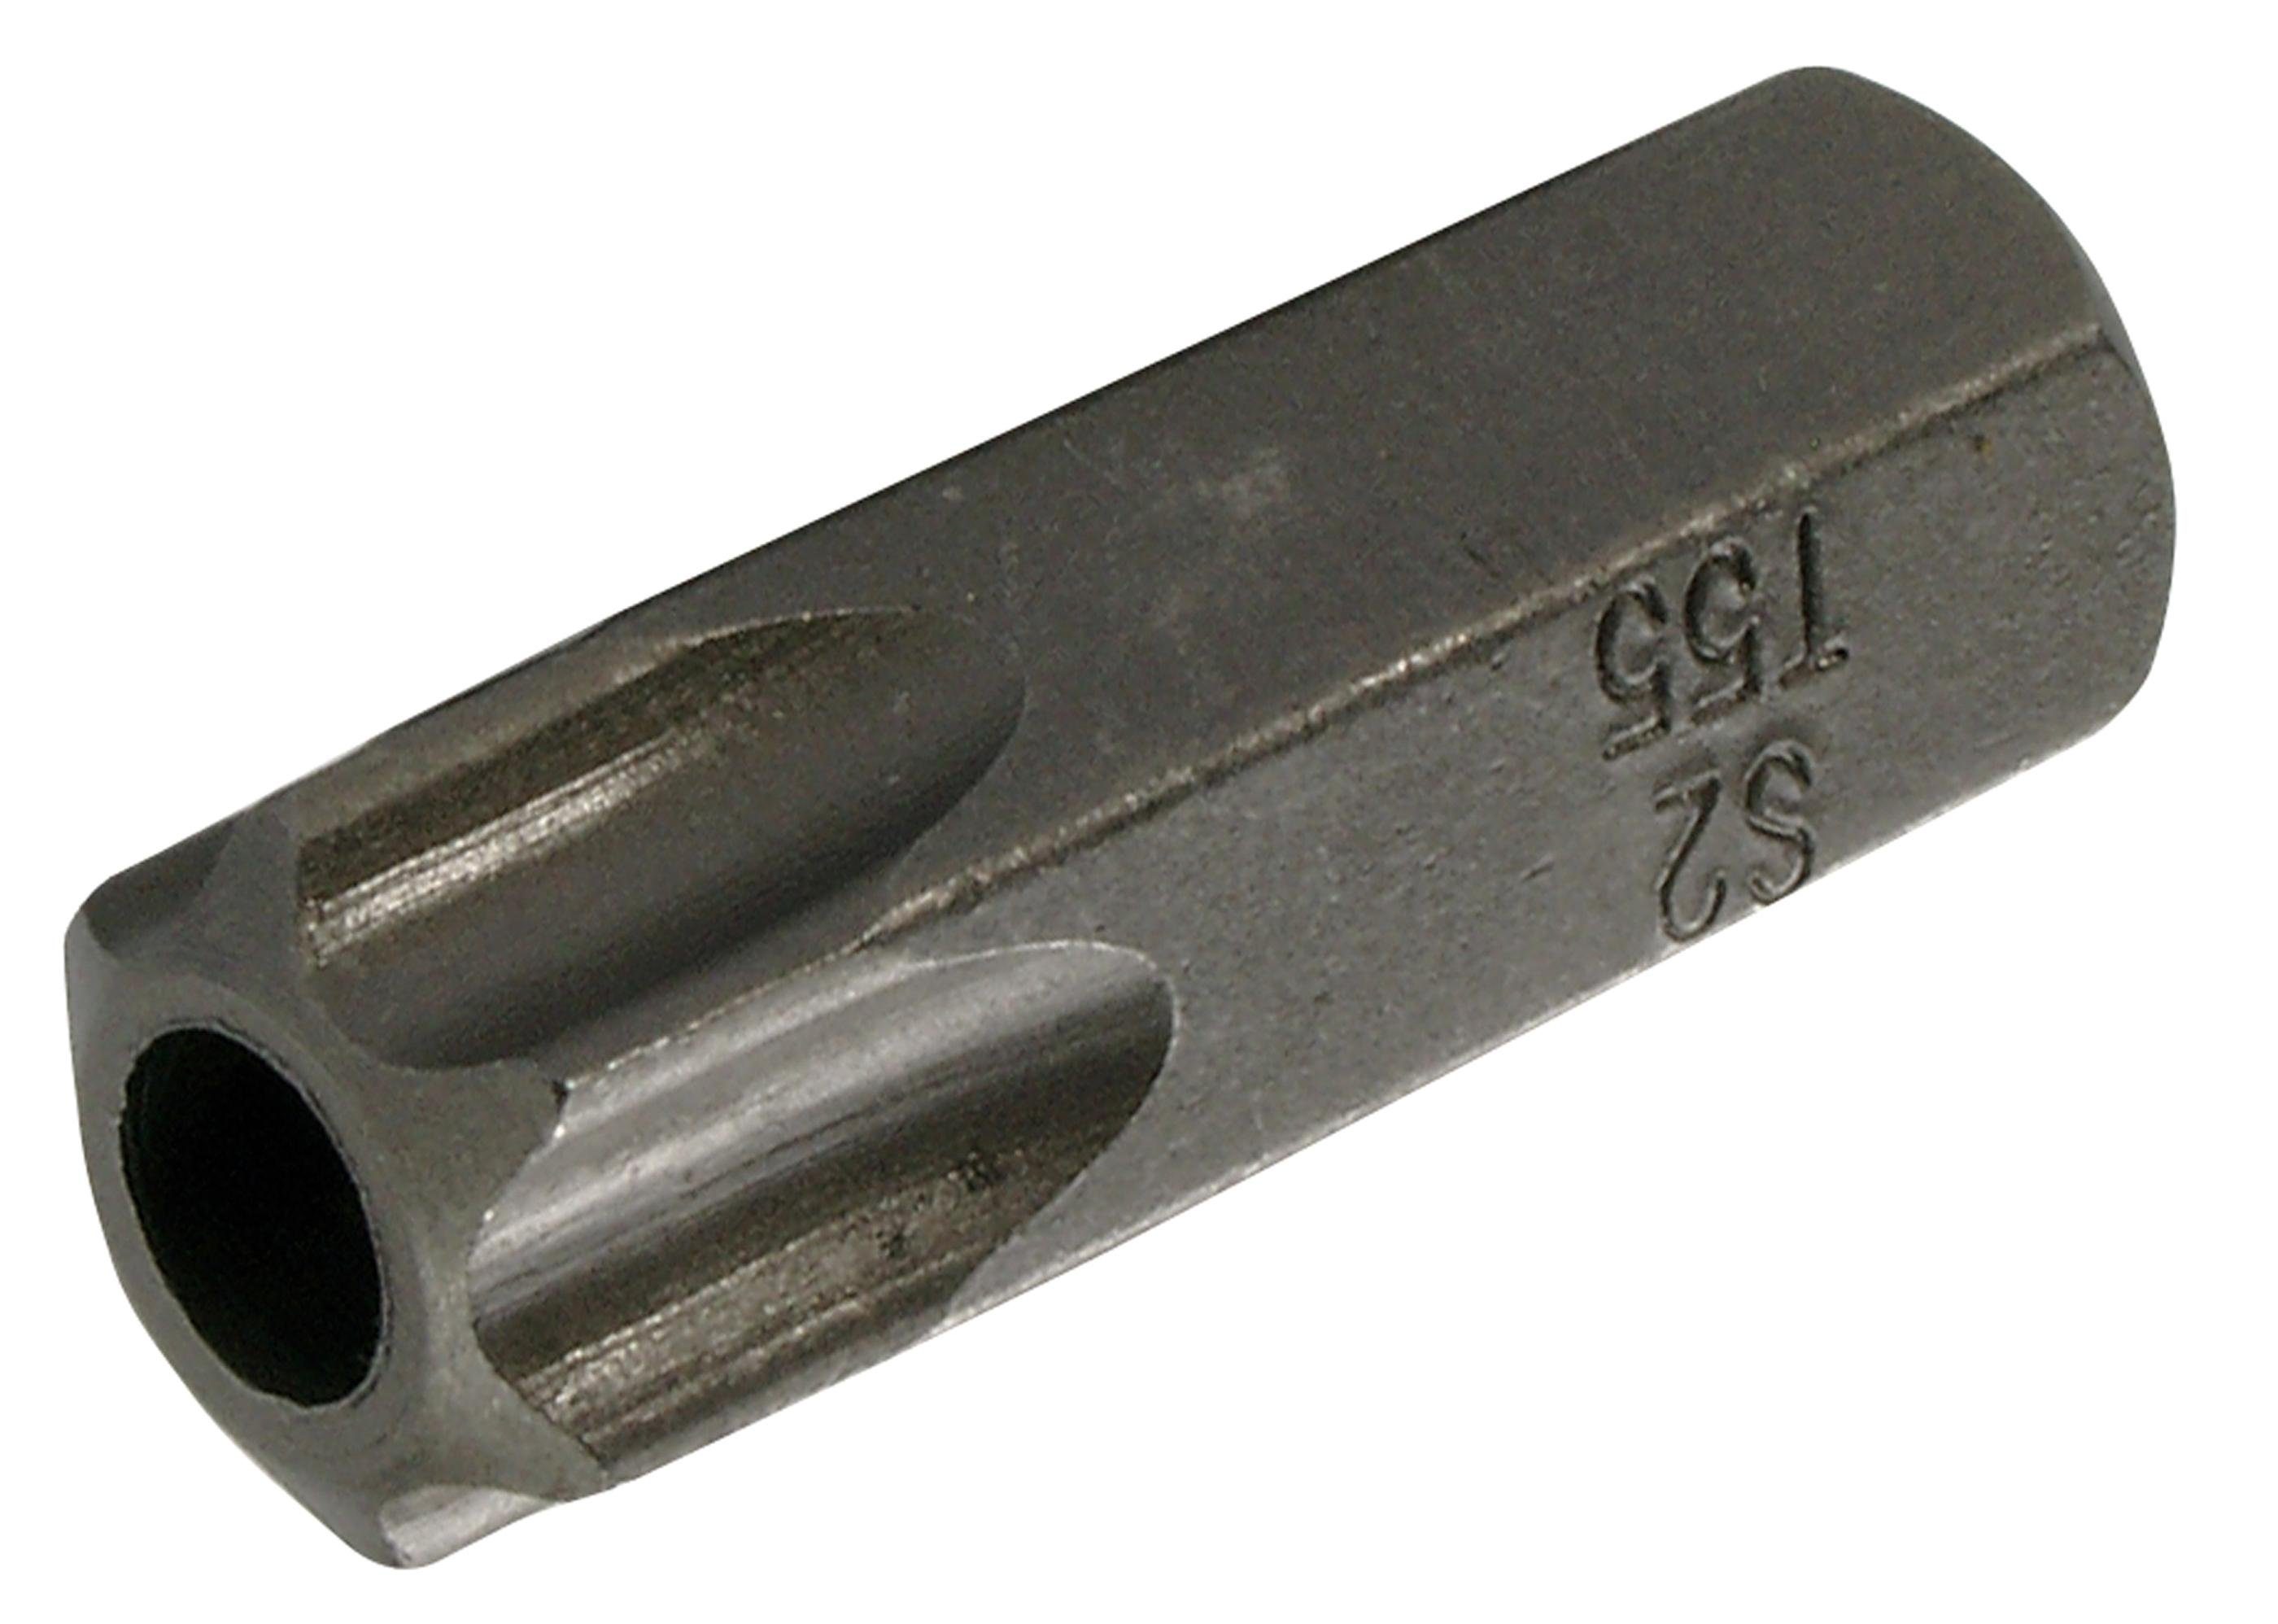 BGS technic Bit-Schraubendreher Bit, mit T-Profil mm Bohrung 30 10 Torx) Antrieb mm, Außensechskant (3/8), T55 (für Länge